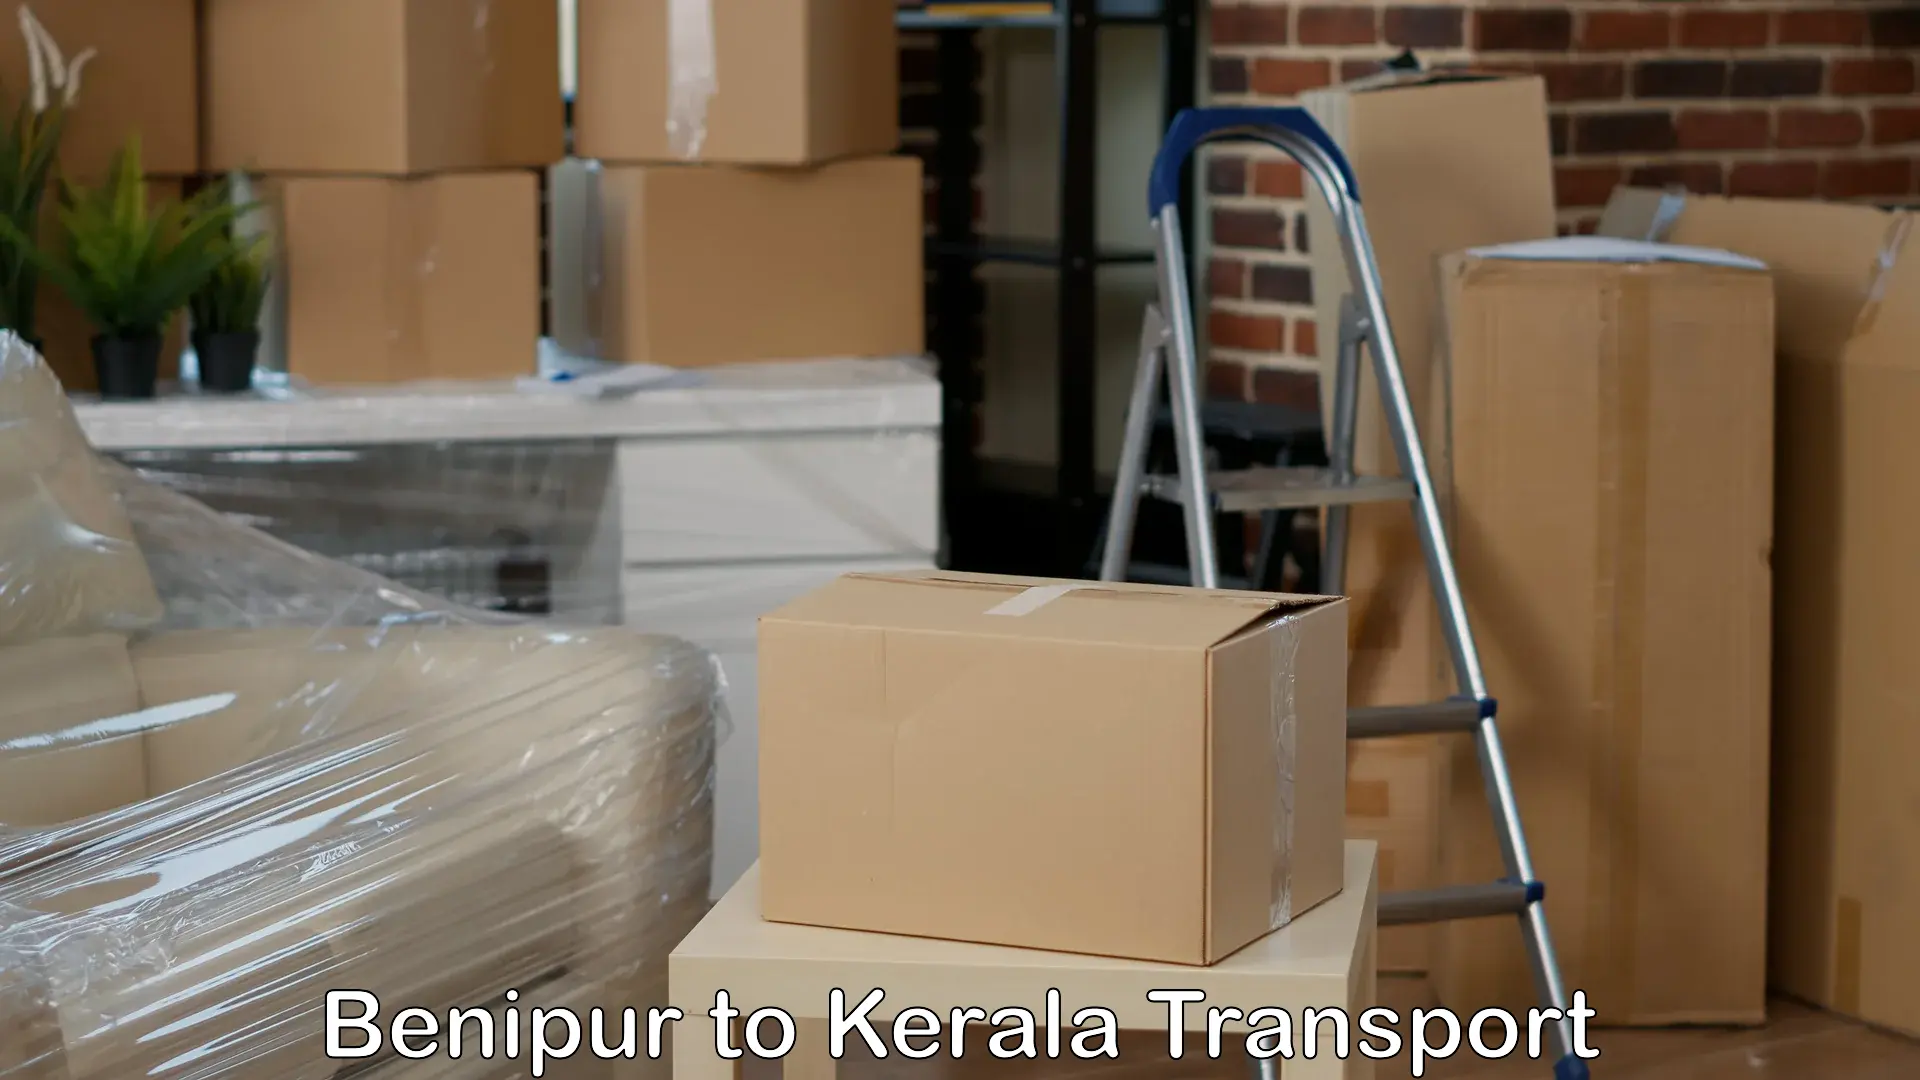 Road transport online services Benipur to Perumbavoor